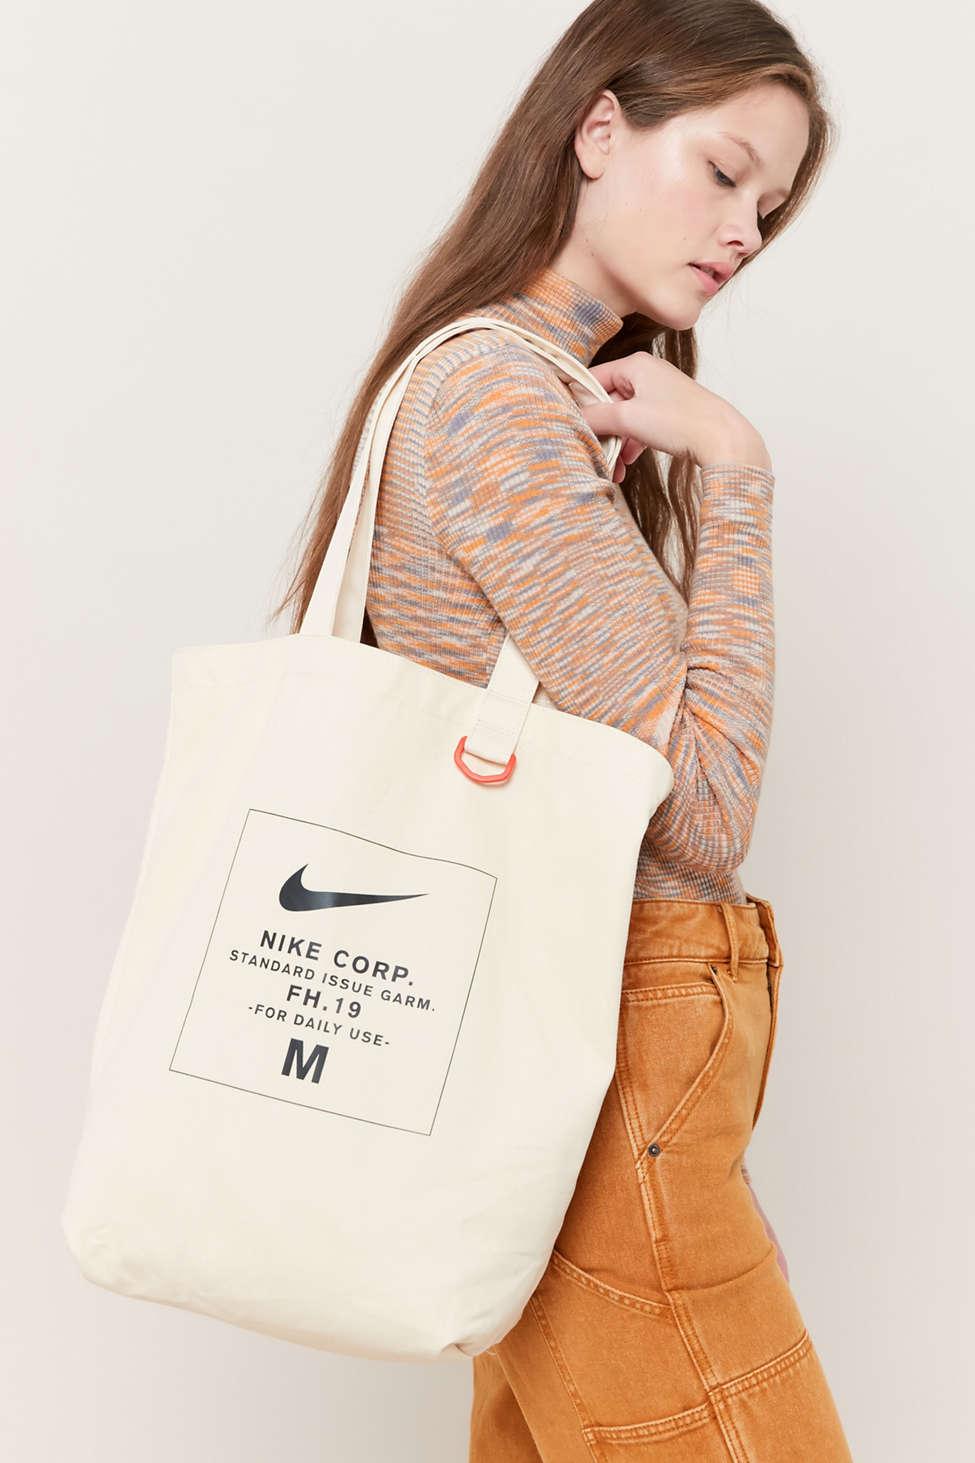 Women's Tote Bags at Nike - Bags